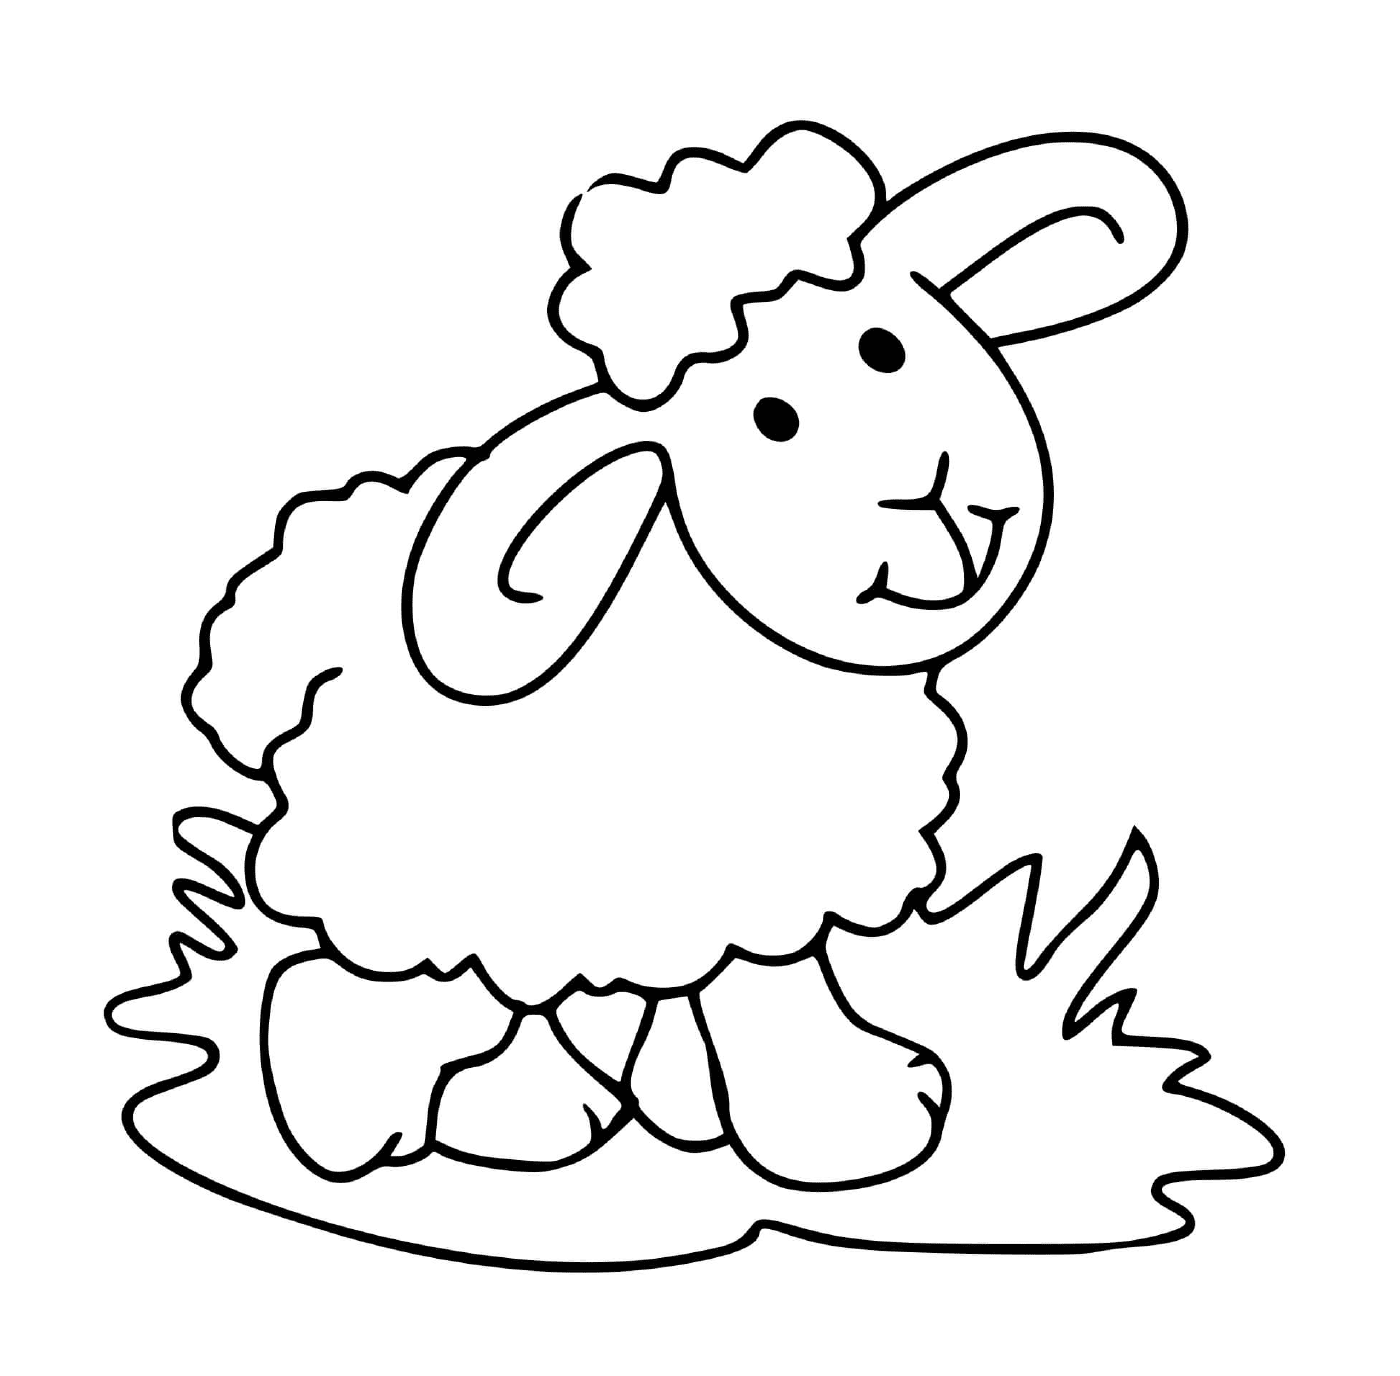  Mouton erba pacifica sfiorata 